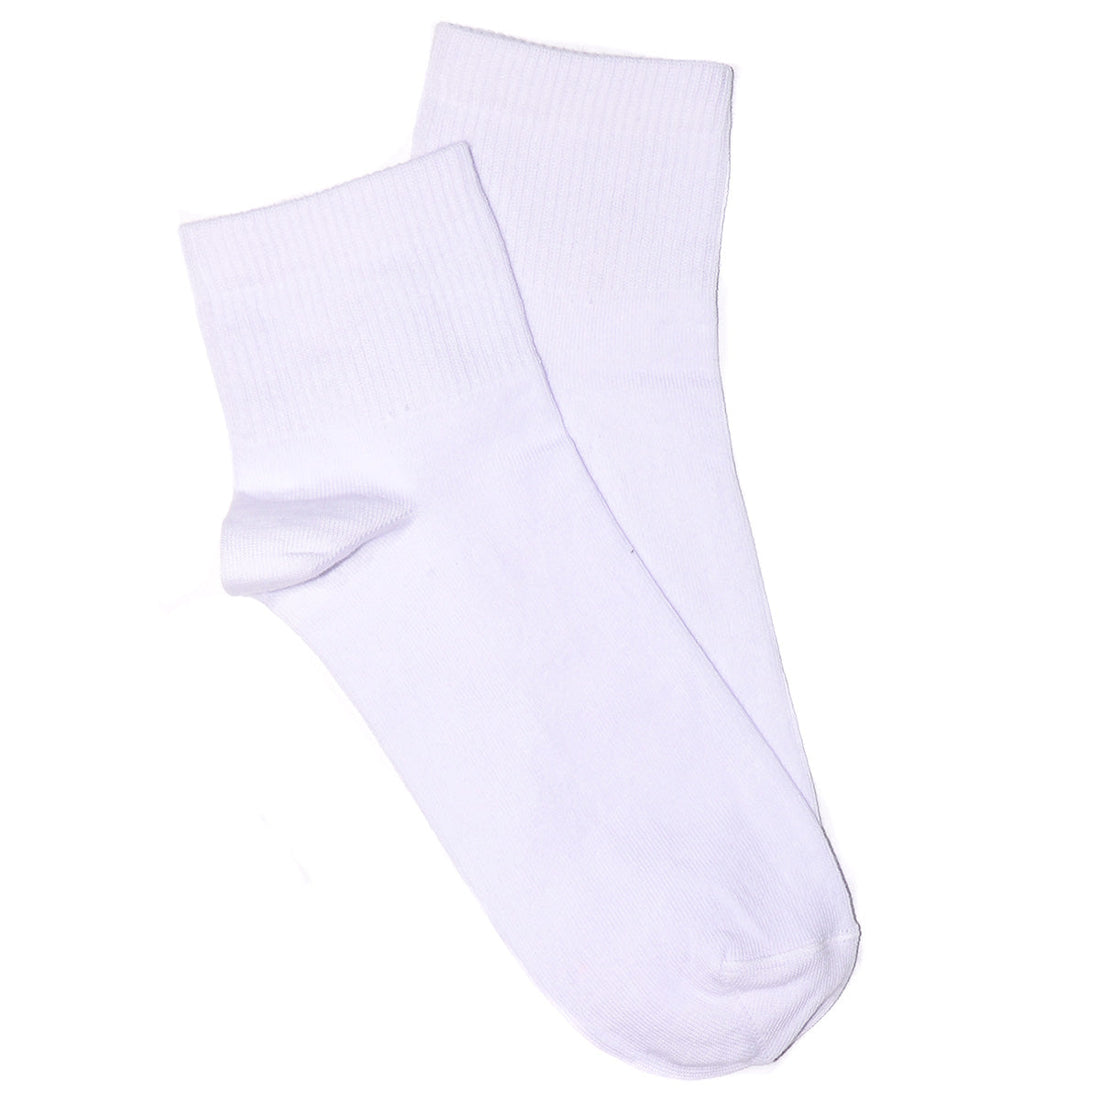 White Sport Short Socks